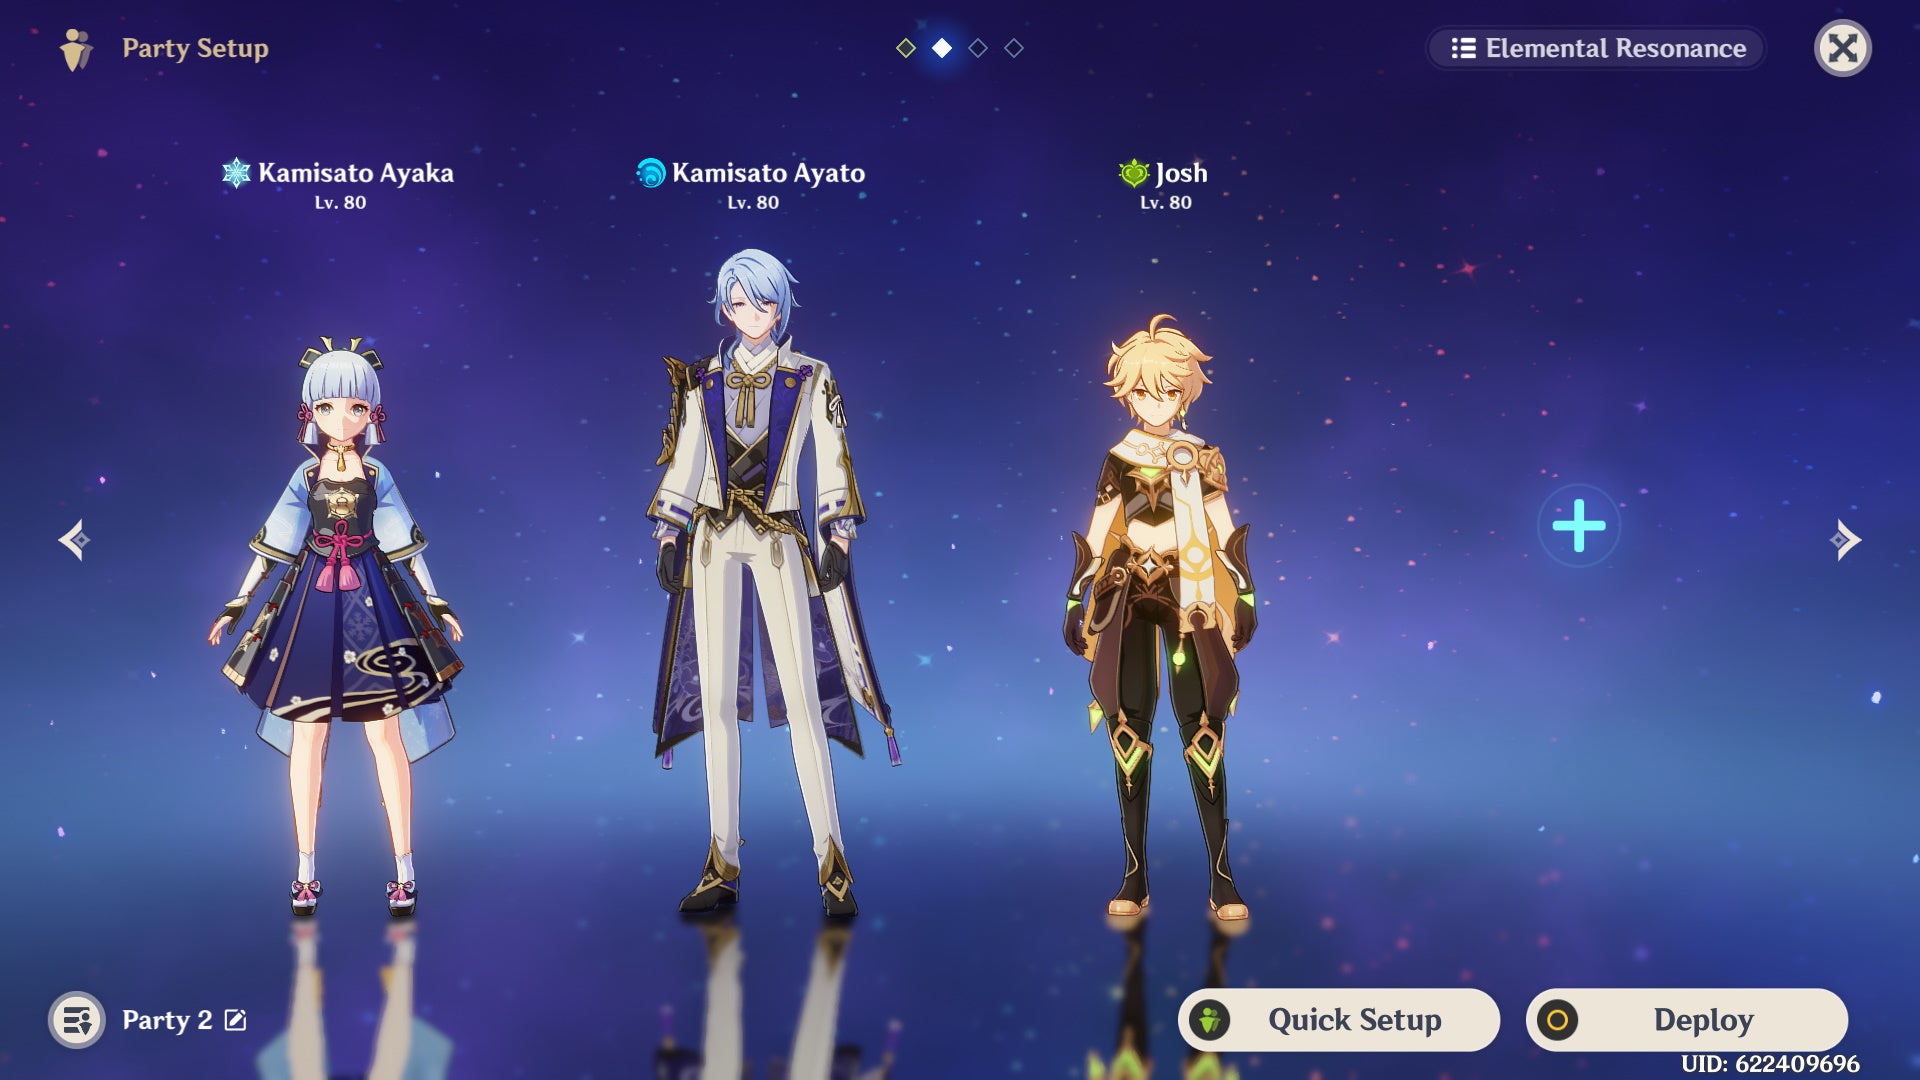 Cyno teams: A menu page showing Cyno's optimal DPS team, with Ayaka, Ayato, and the Dendro Traveler